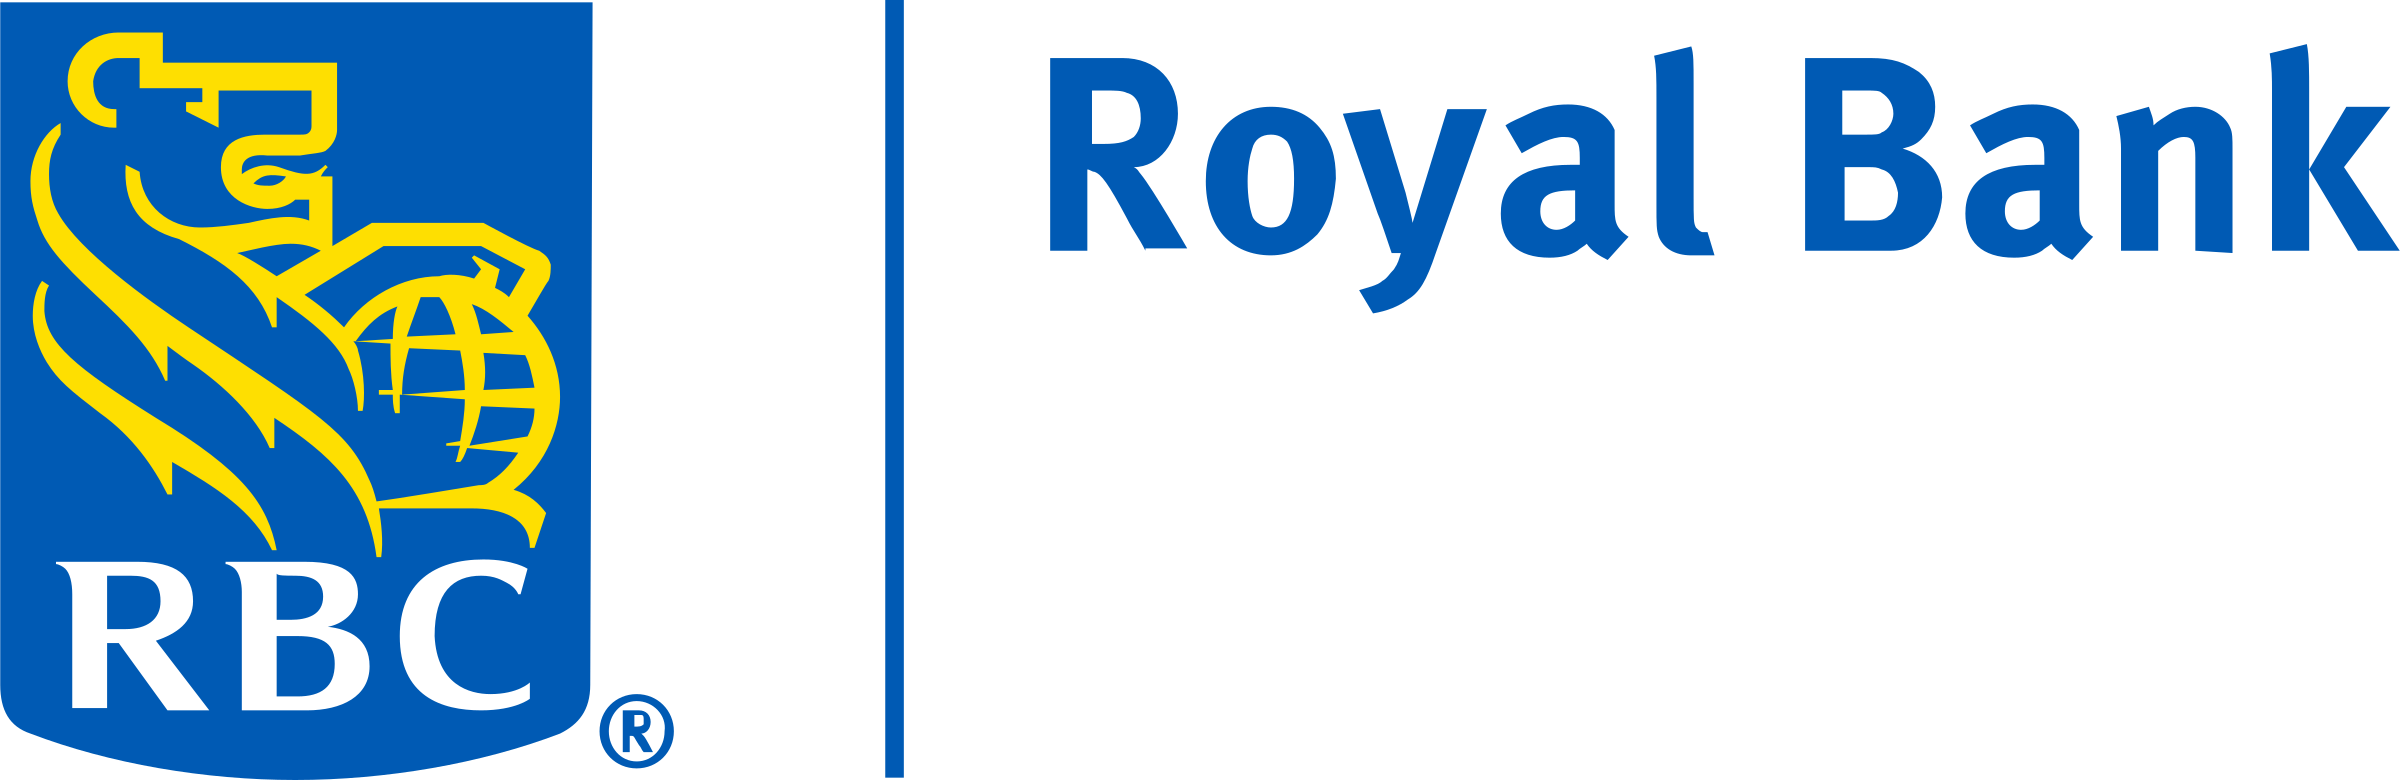 rbc-royal-bank-logo-png-transparent